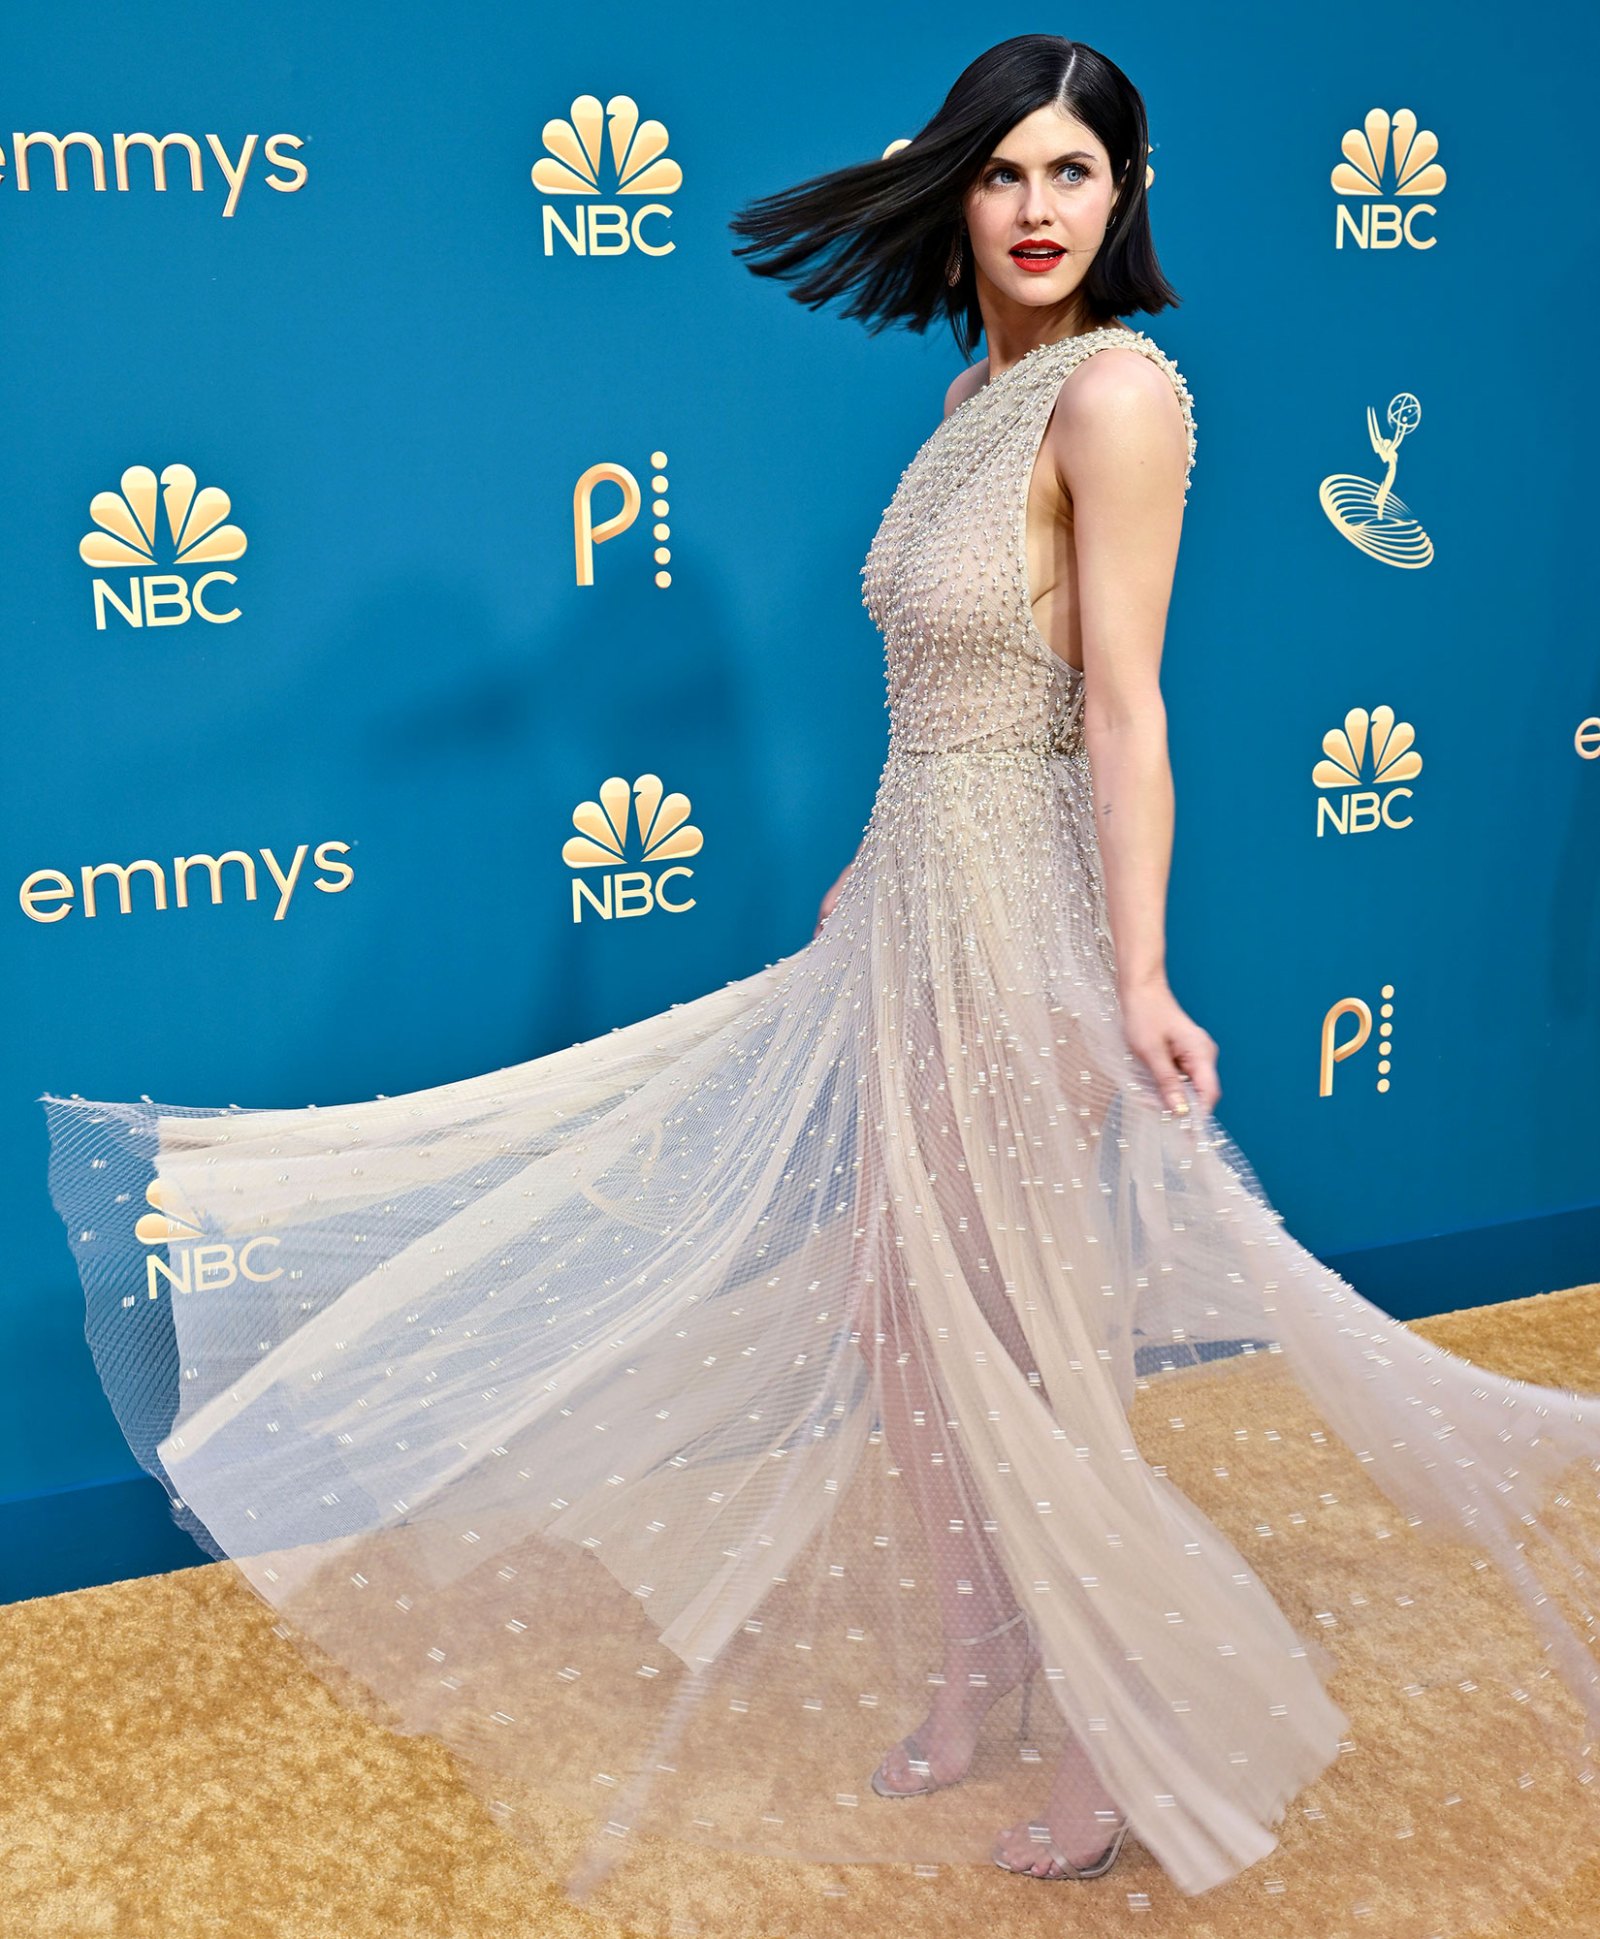 Emmys 2022: Best Beauty, Hair, Makeup